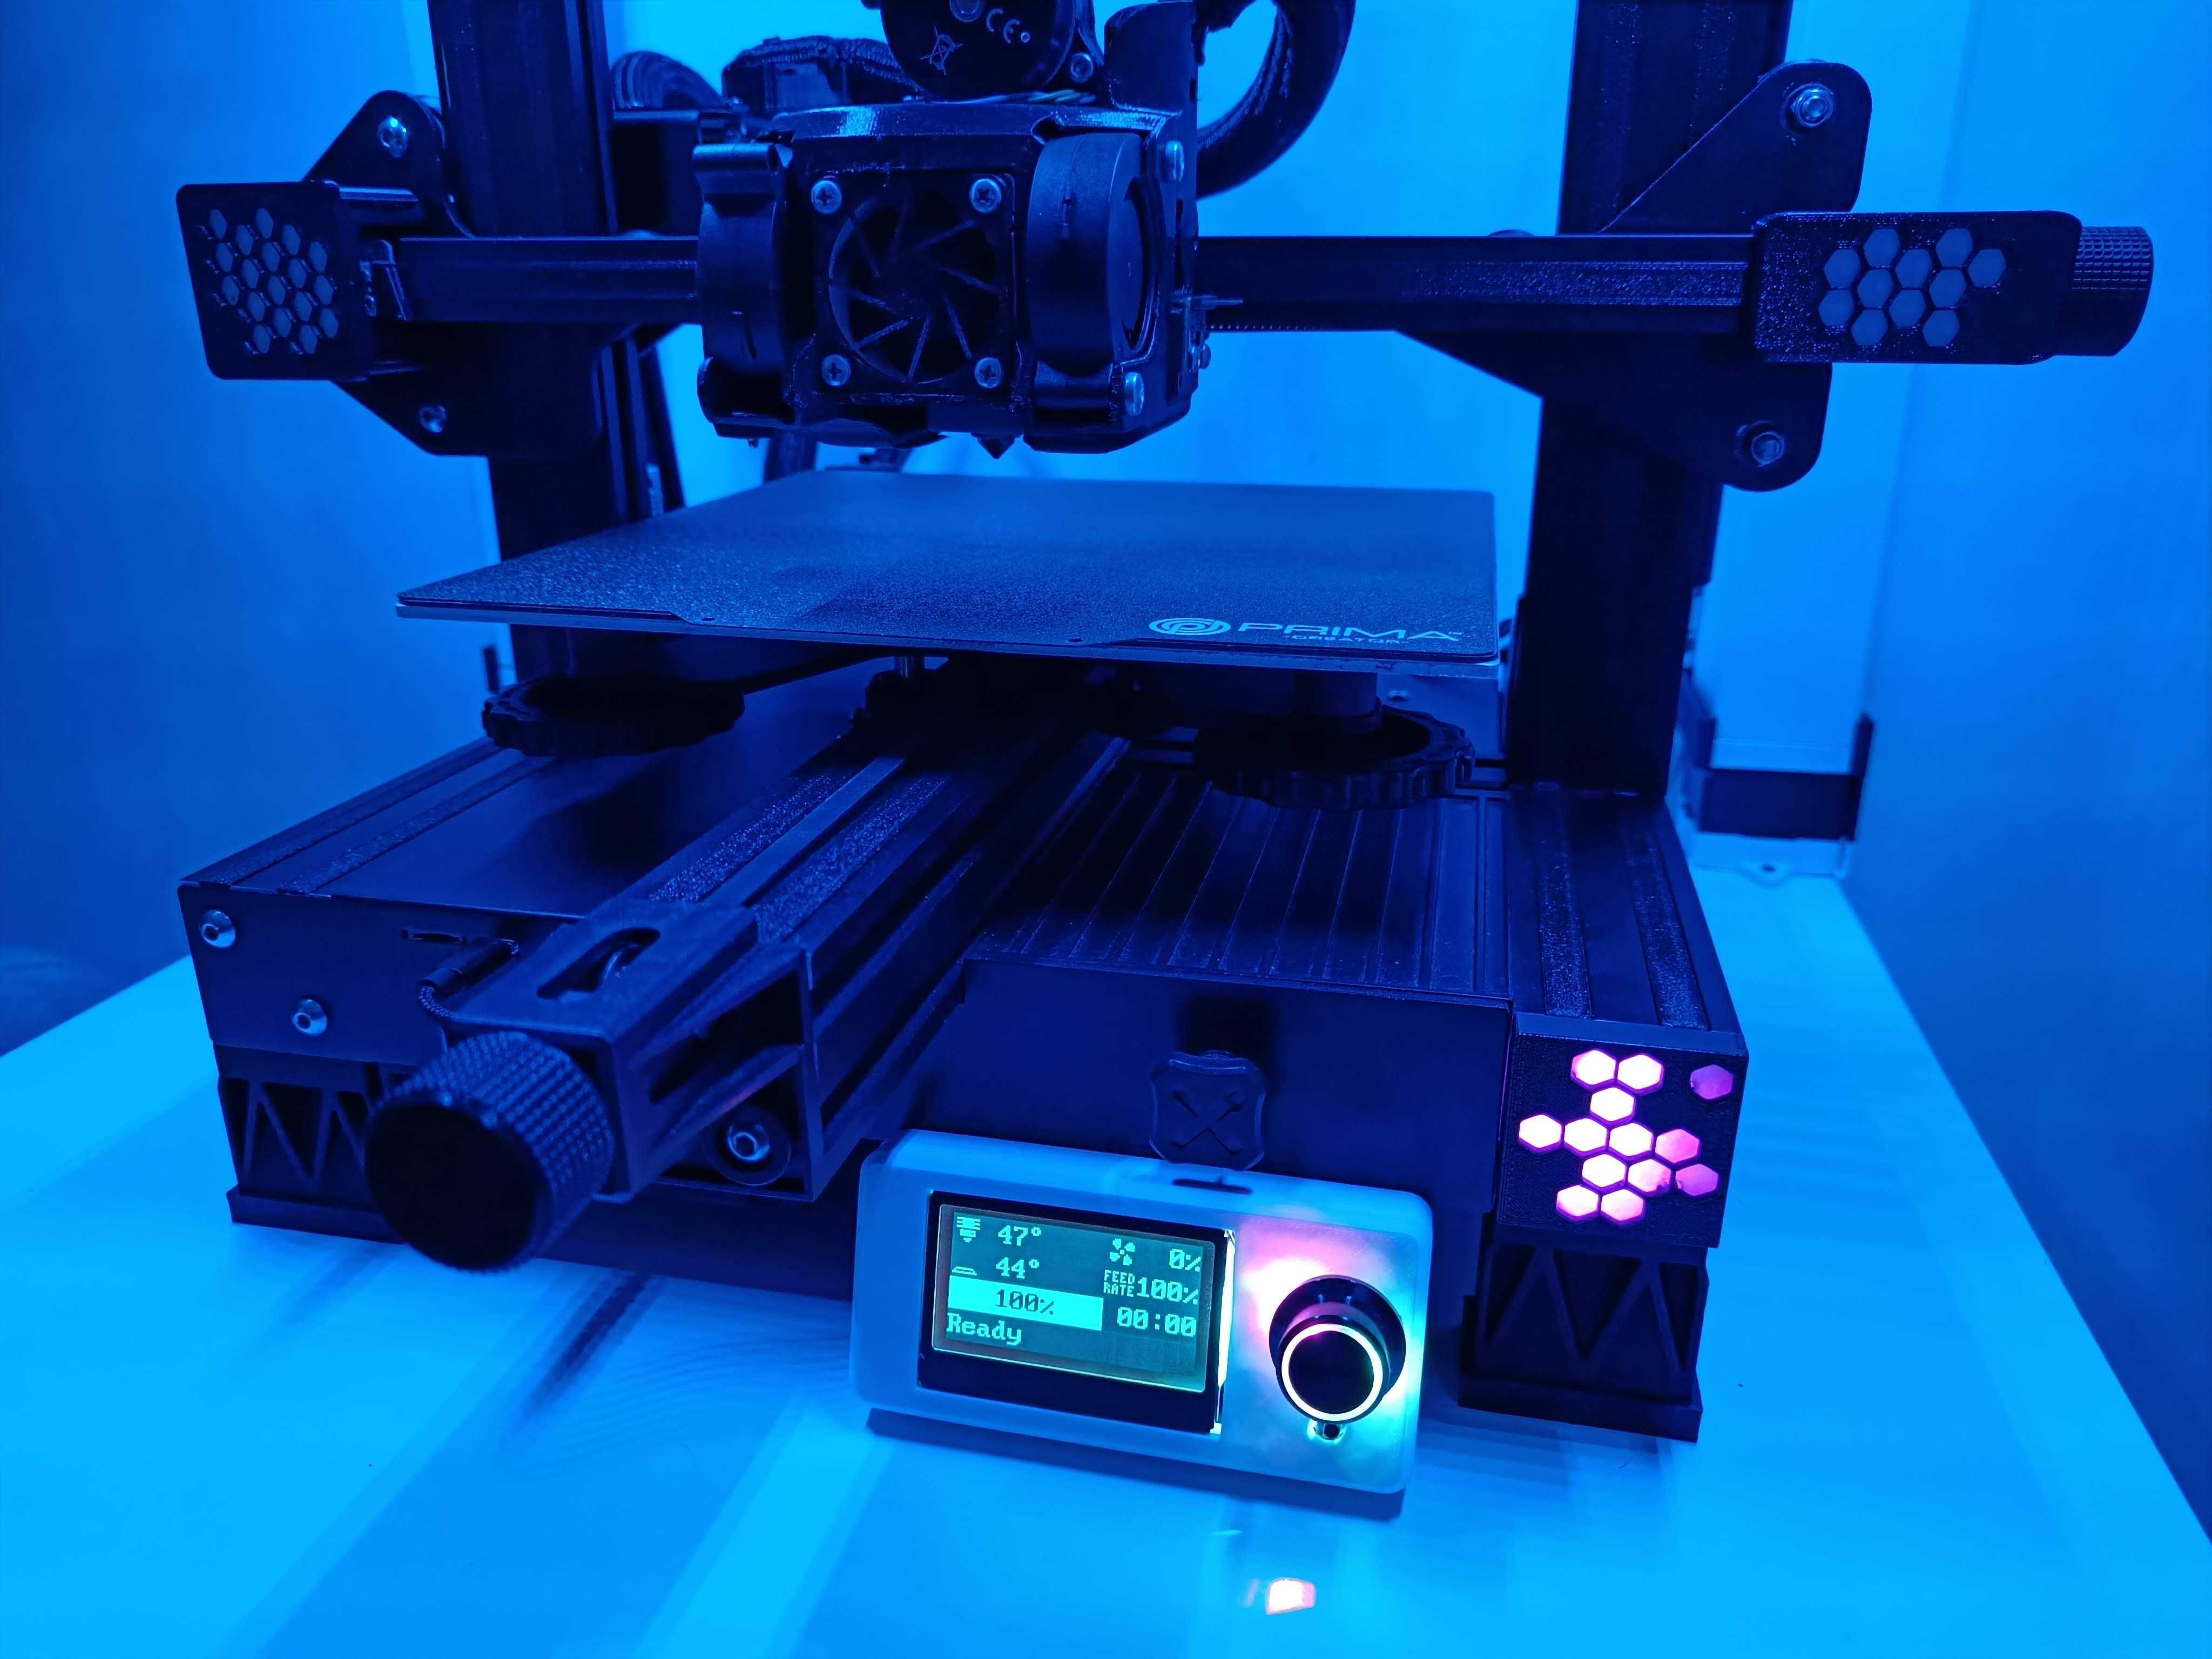 Imprimanta 3d - Ender 3 v2 modificat + piese schimb + filament eryone